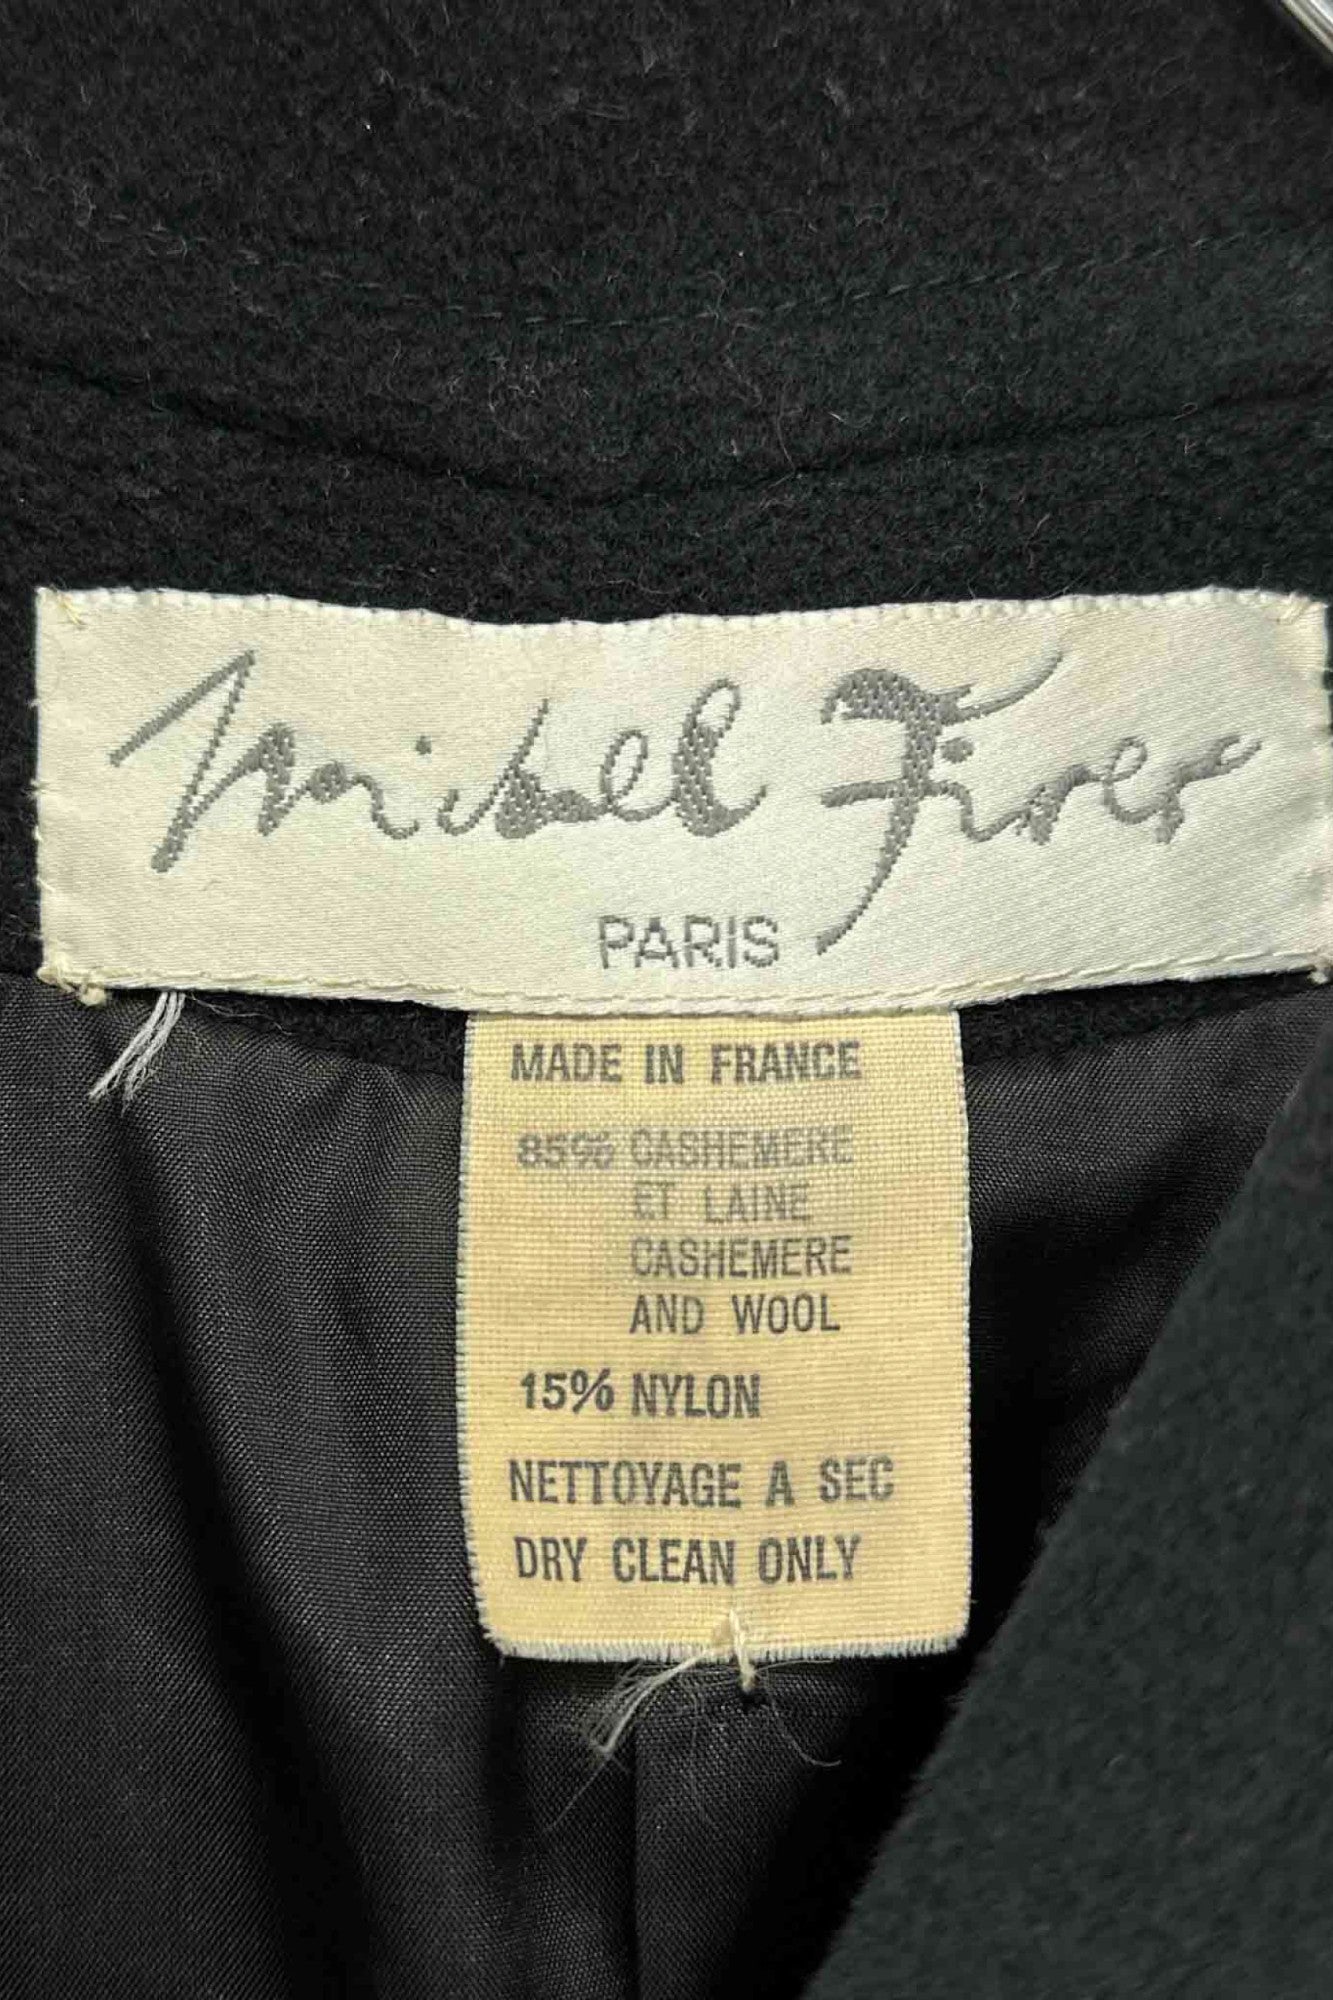 Made in France michel firer black coat